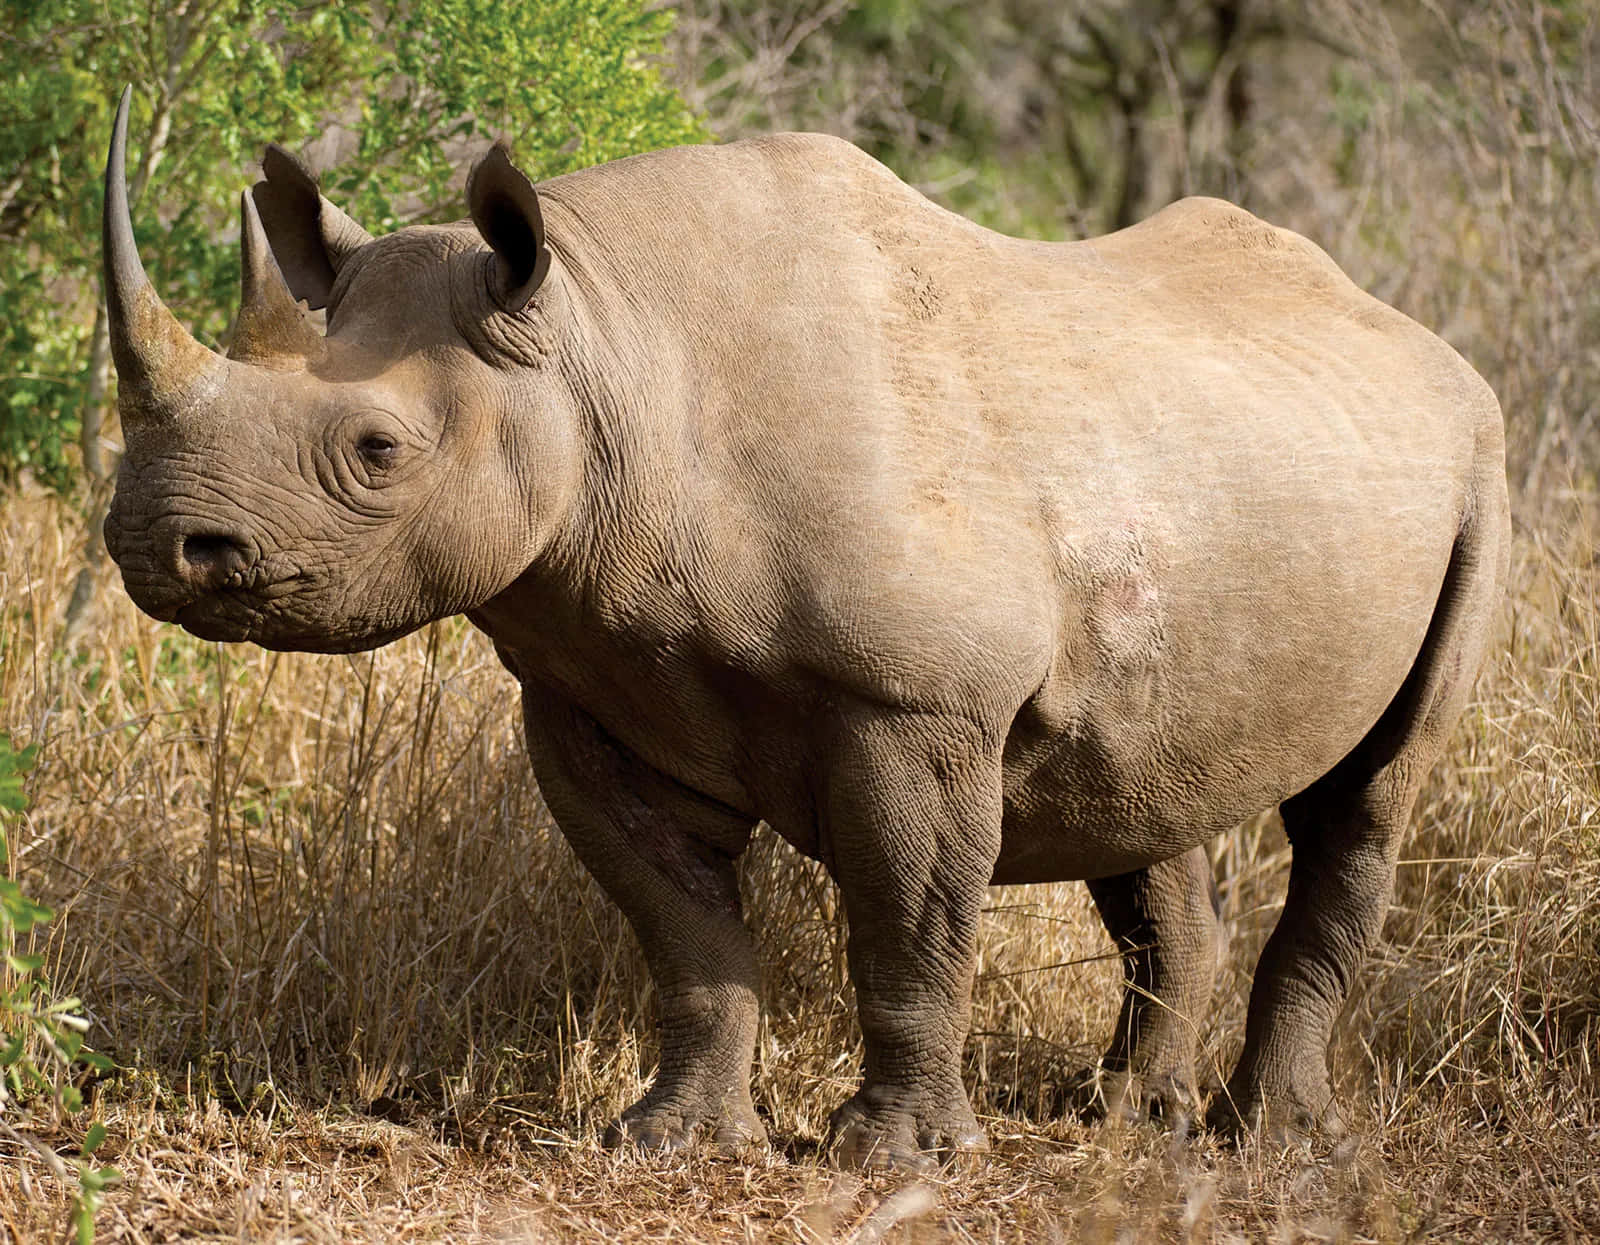 Unamanada De Rinocerontes En La Sabana Africana